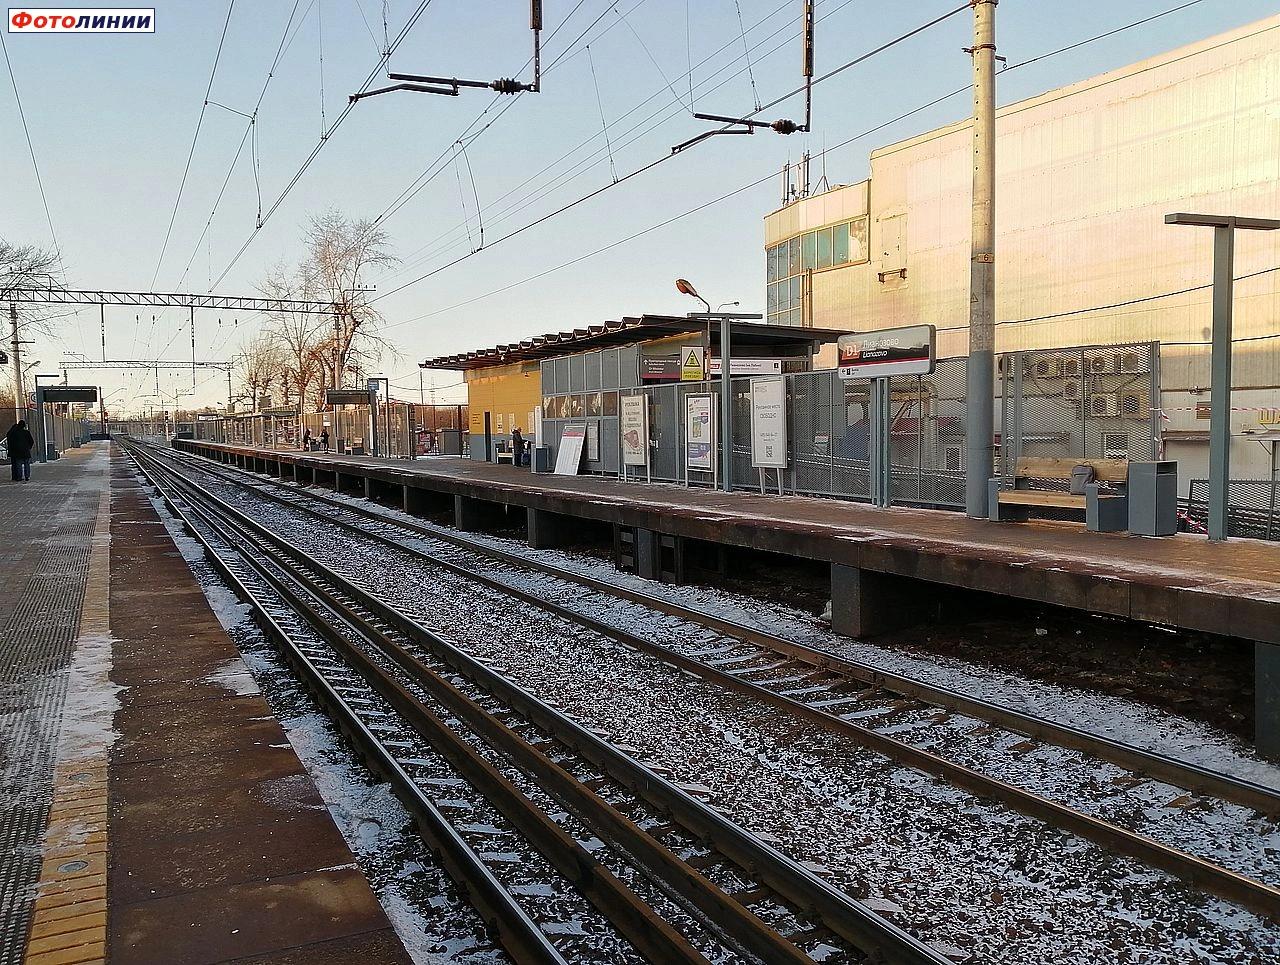 Турникетный павильон на второй платформе, вид с первой платформы в чётном направлении